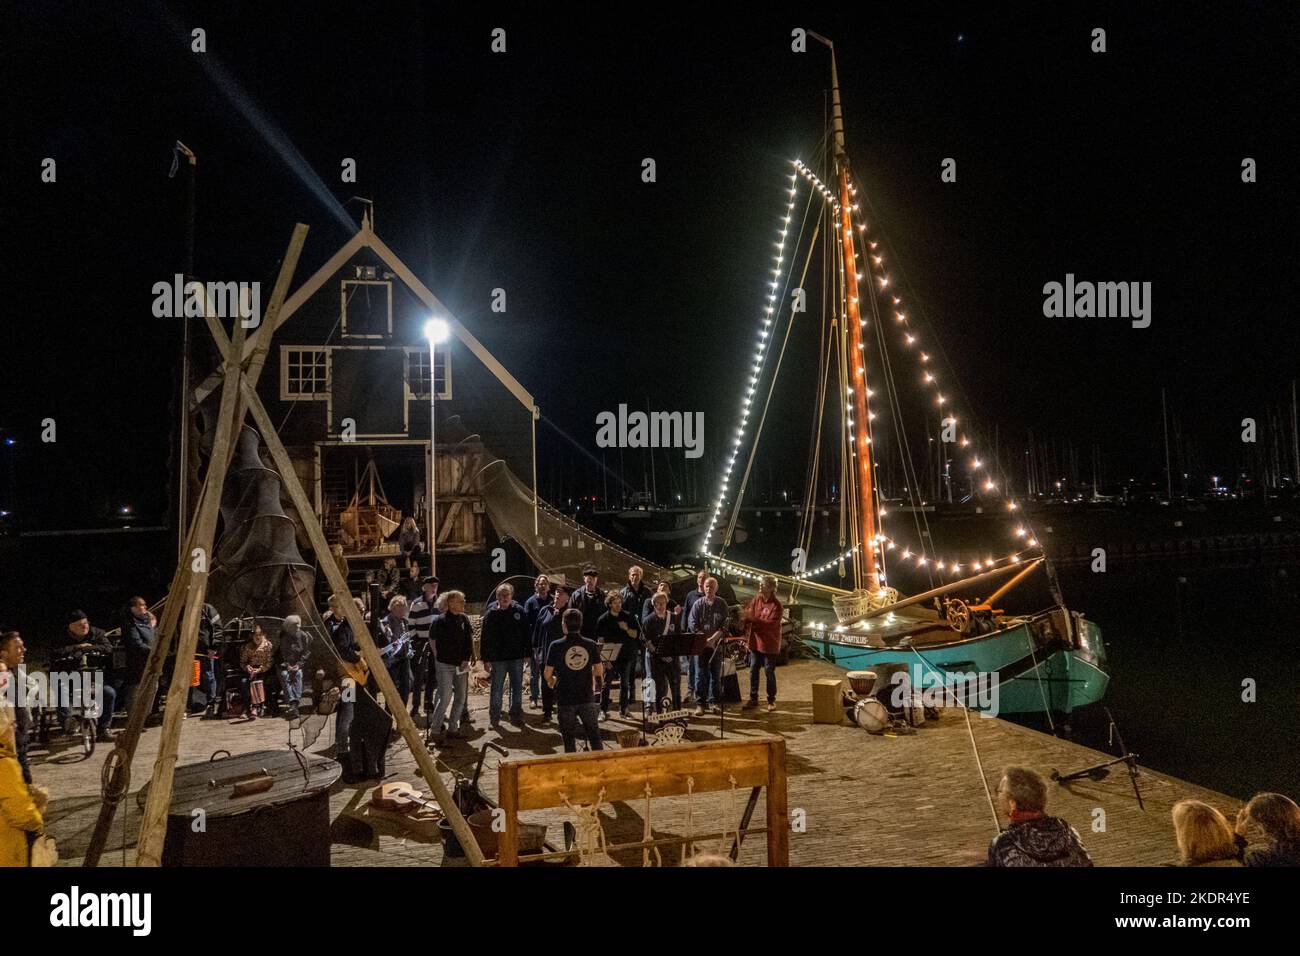 Enkhuizen, Niederlande. Oktober 2022. Ein altes Flachboot und ein Shanty-Chor im Hafen von Enkhuizen. Abendaufnahme. Hochwertige Fotos Stockfoto